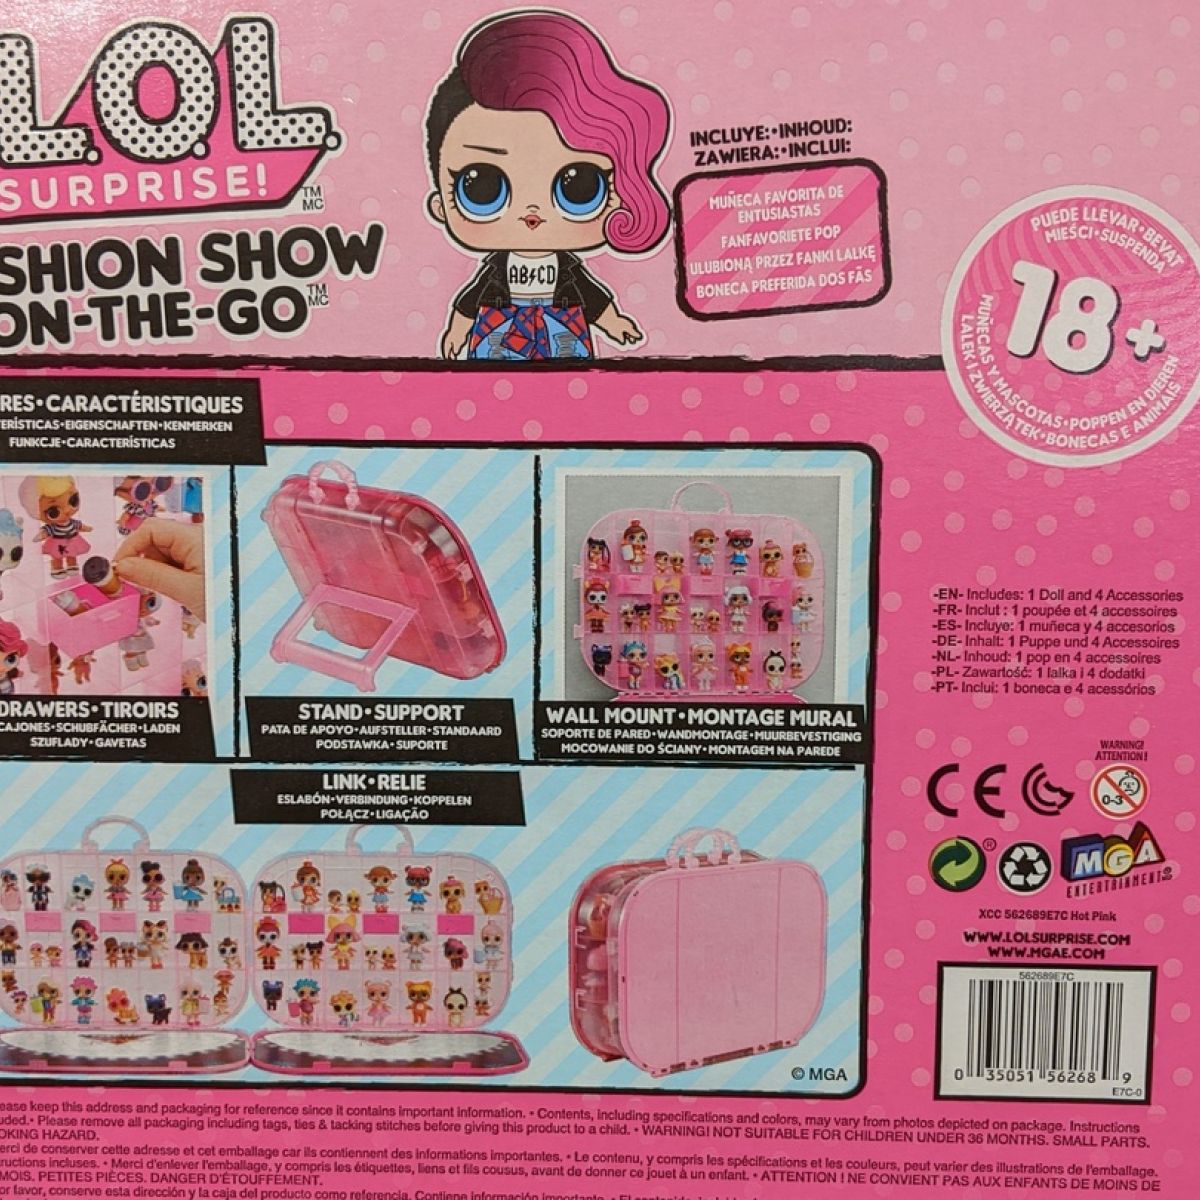 Misleading Lol Dolls Packaging Leaves Little Girl Very Upset